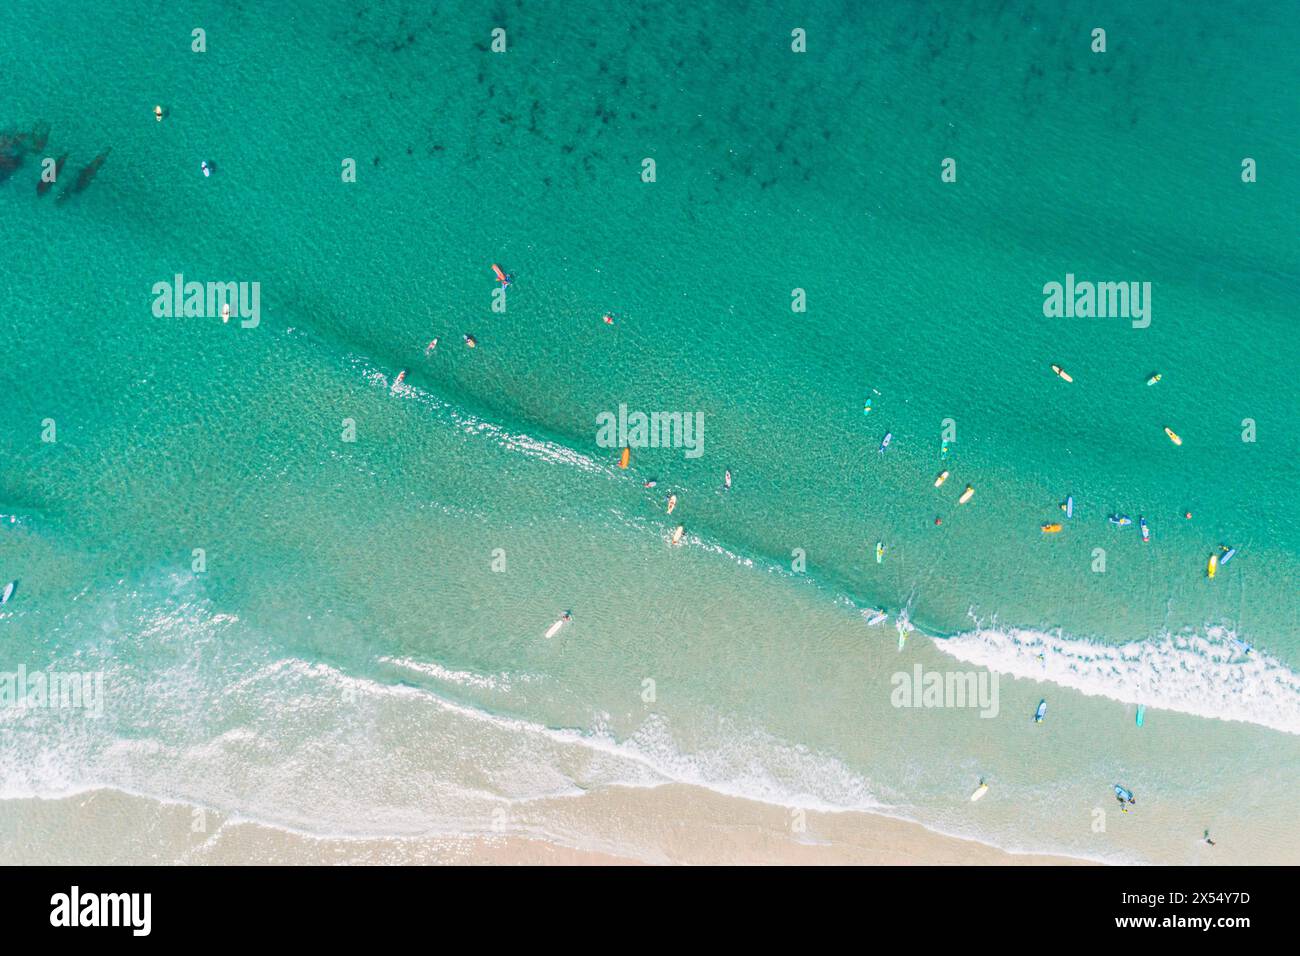 vista aerea zenithal con drone di una spiaggia con persone che imparano a fare surf, concetto di scuola di surf Foto Stock